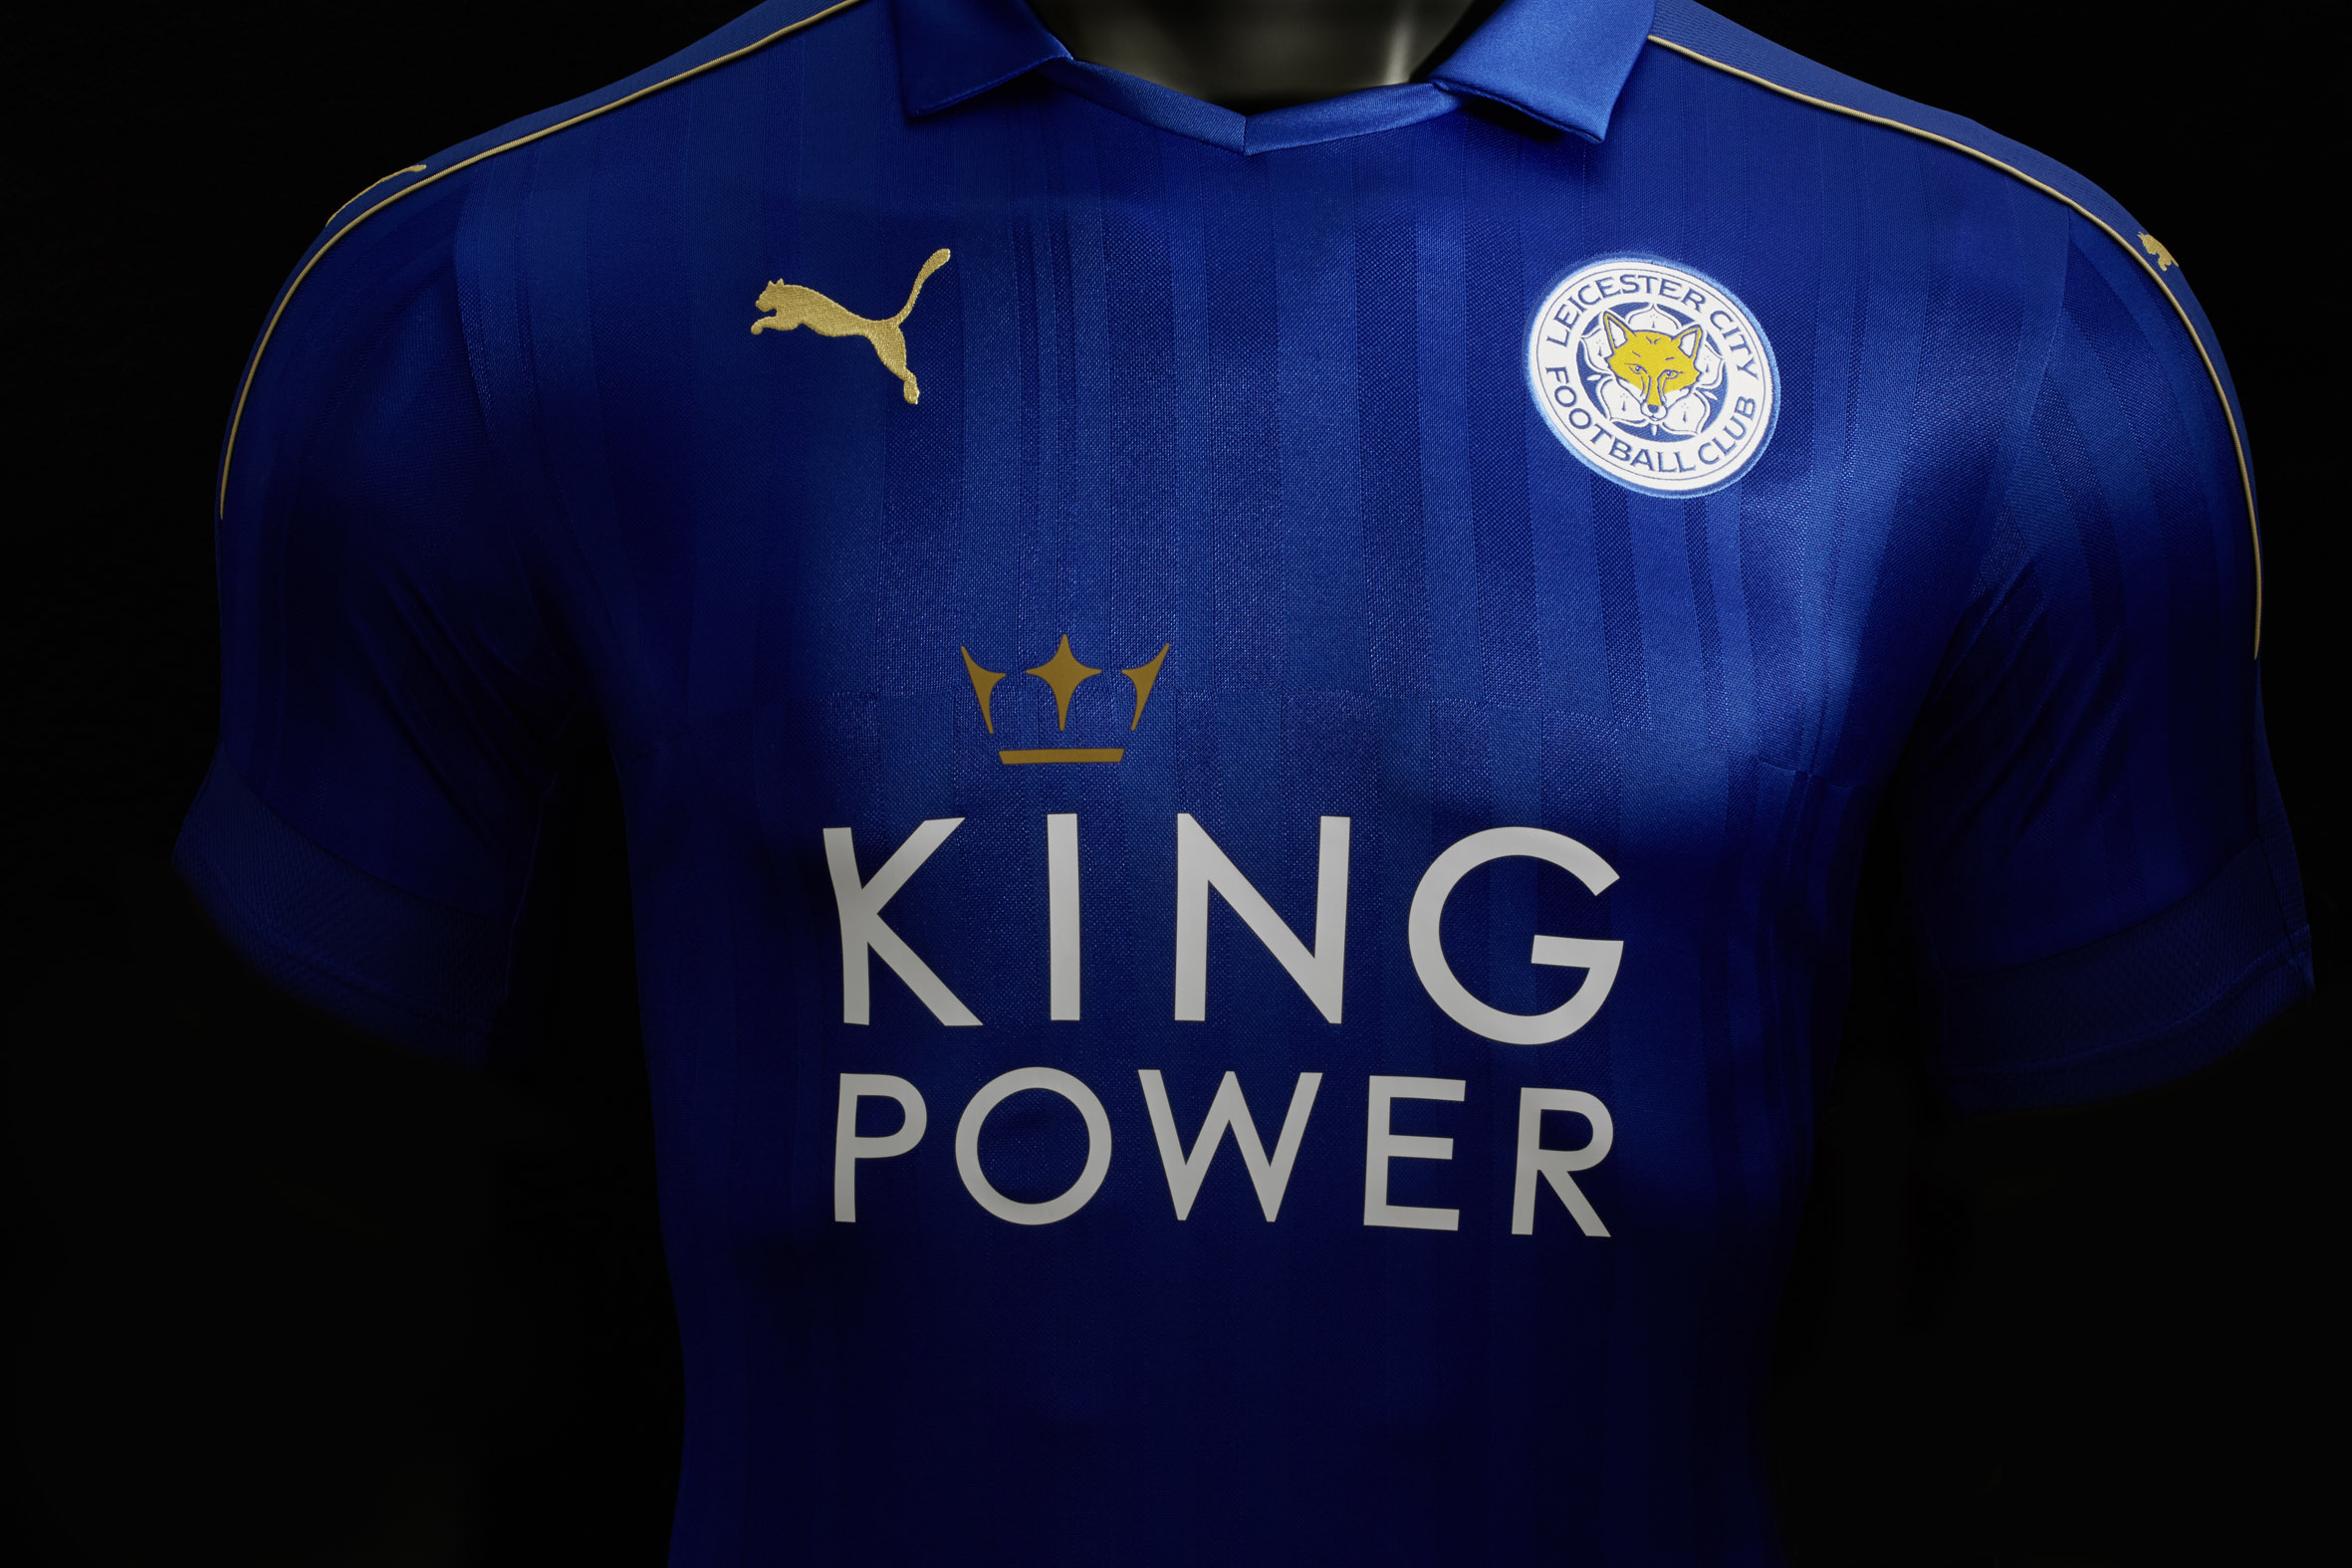 La nuova maglia del Leicester di Ranieri (Foto)